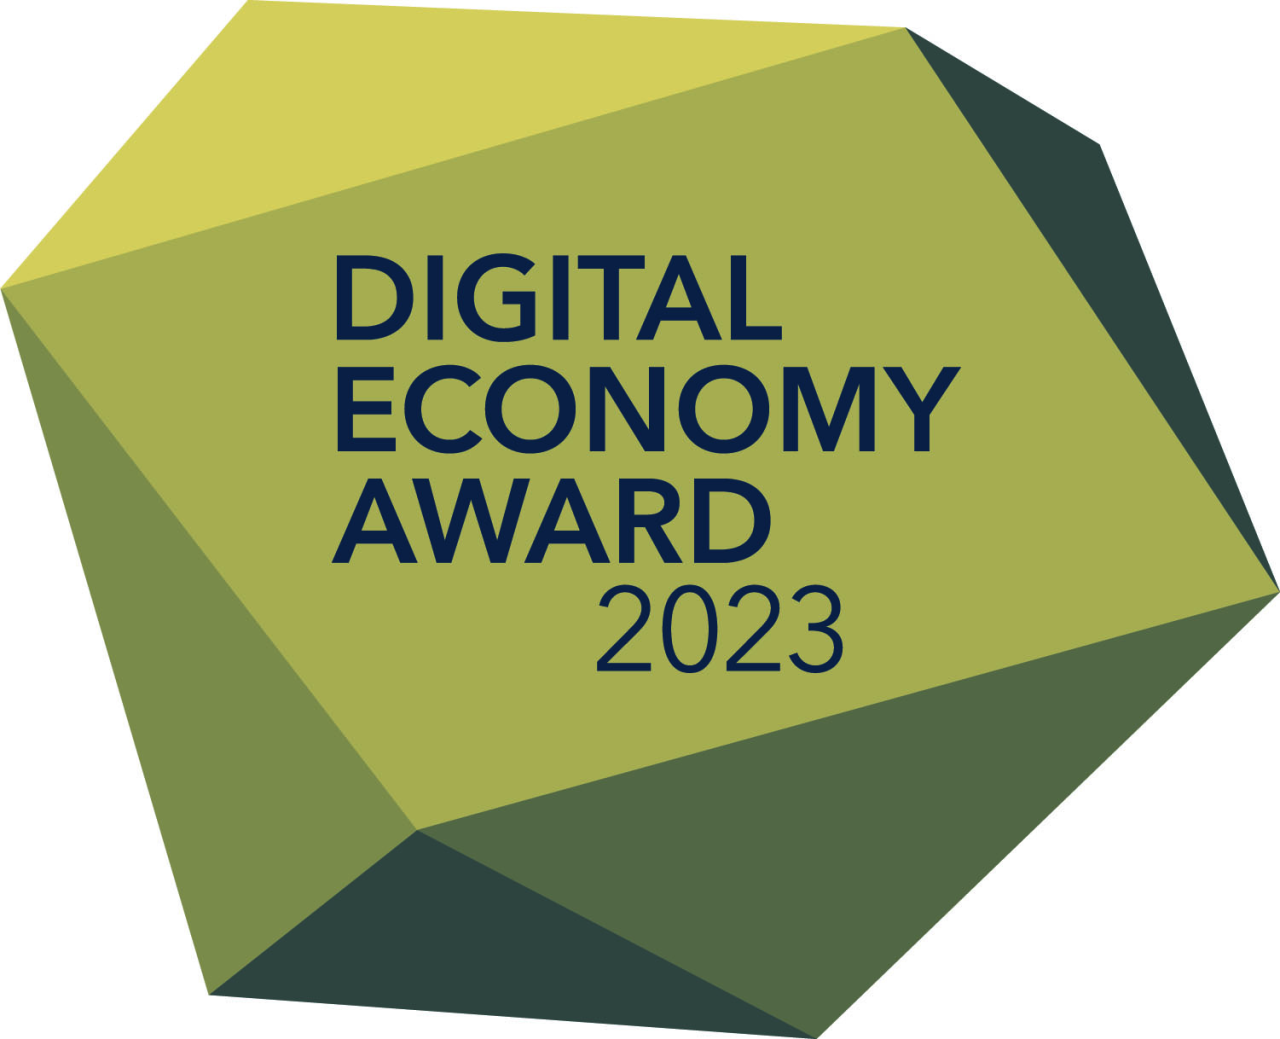 Goldener Award mit der Aufschrift "Digital Economy Award 2023"